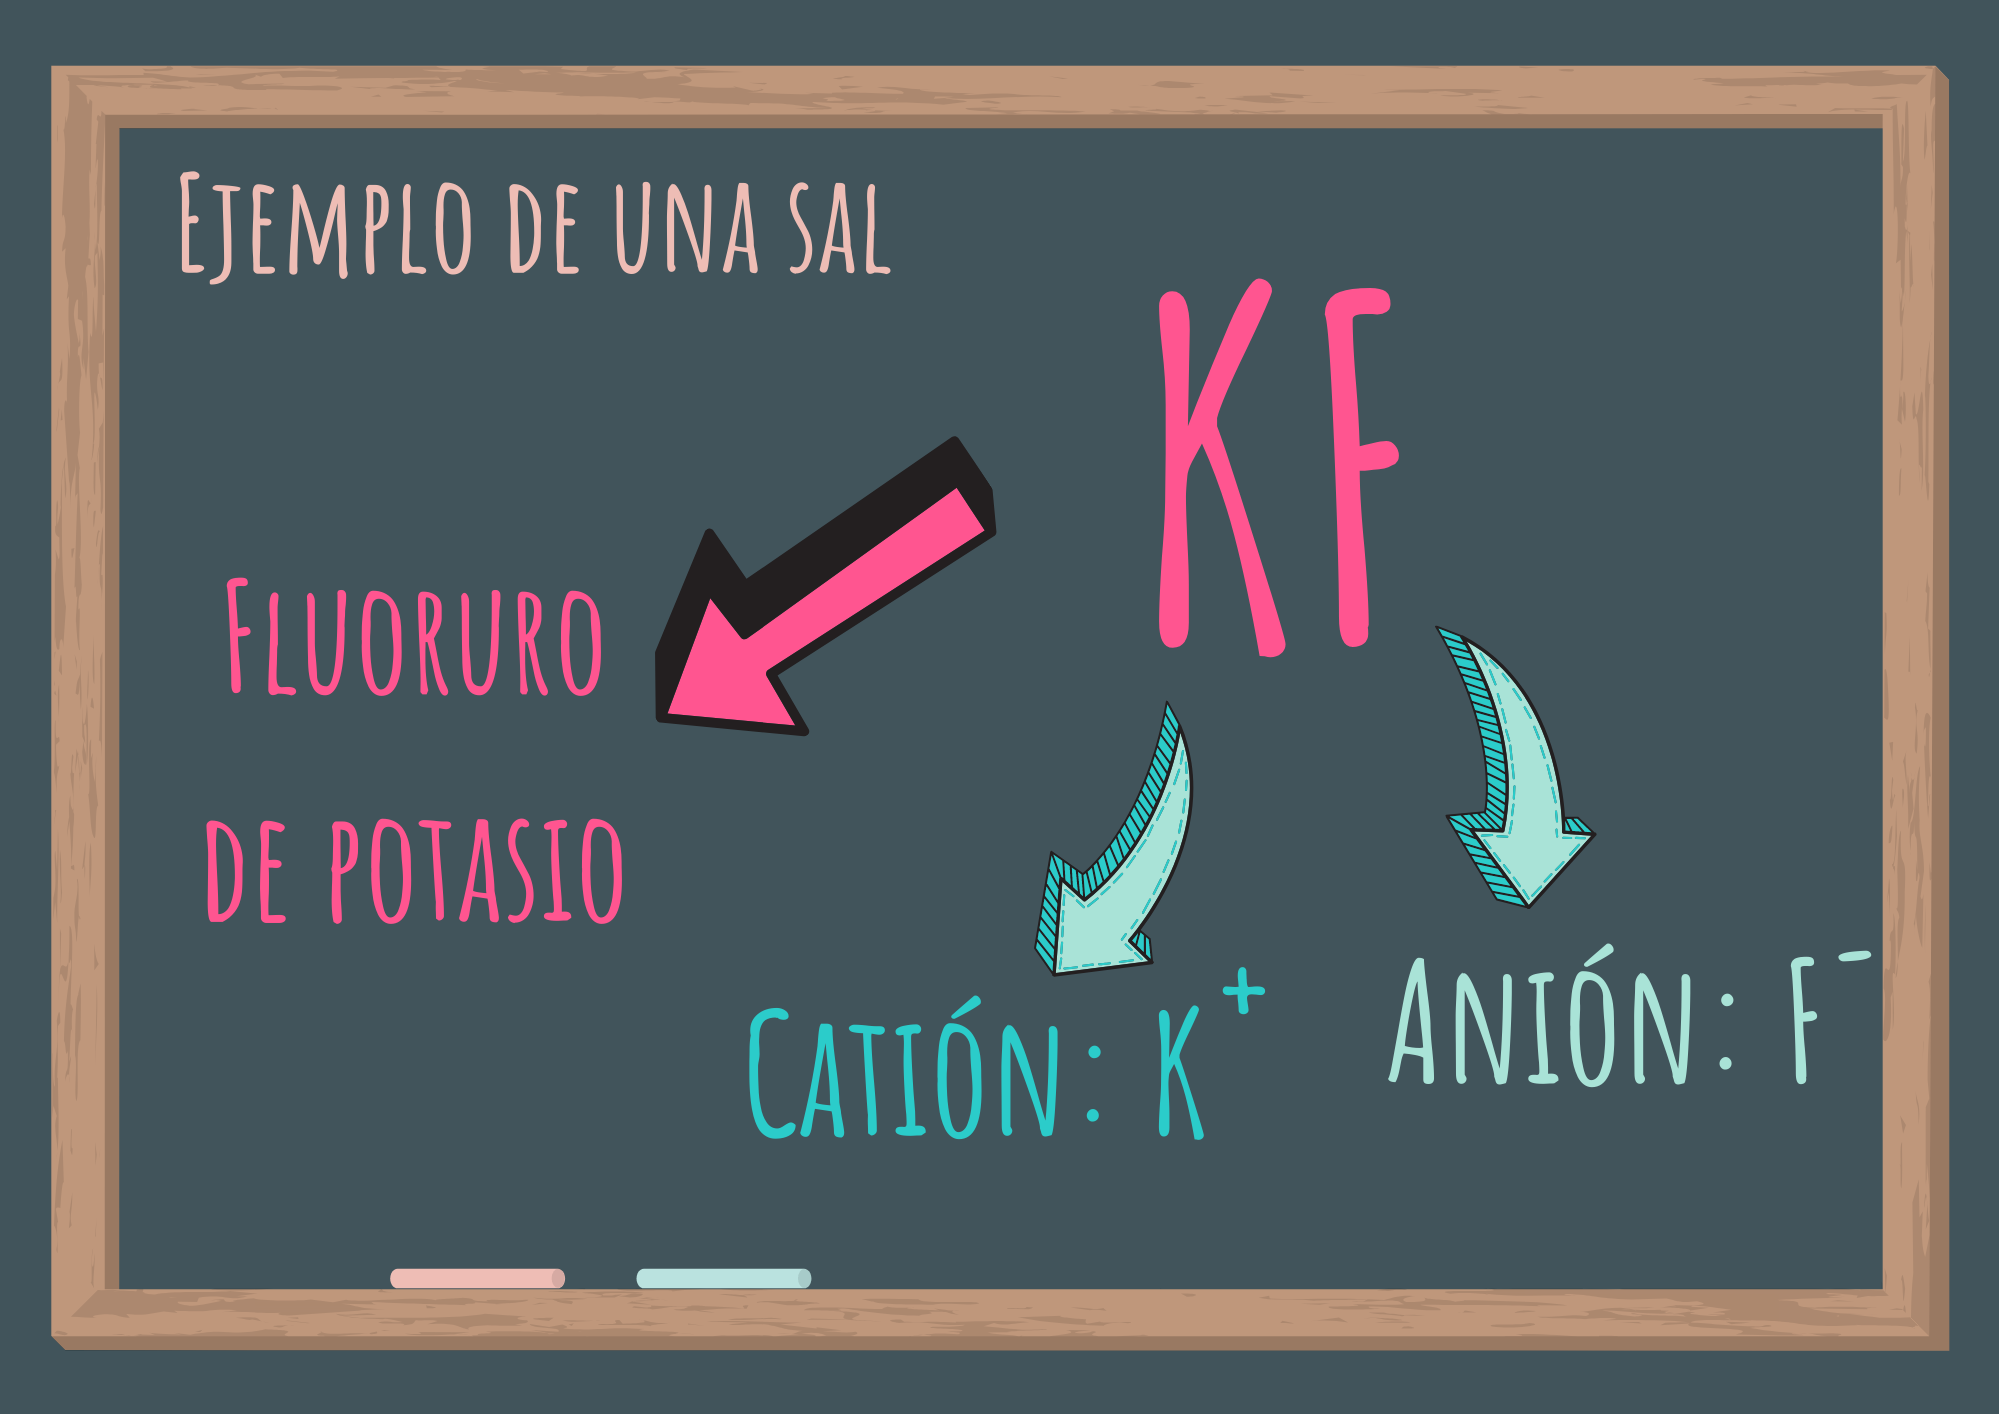 Fluoruro de potasio (KF) formado por catión potasio y anión fluoruro